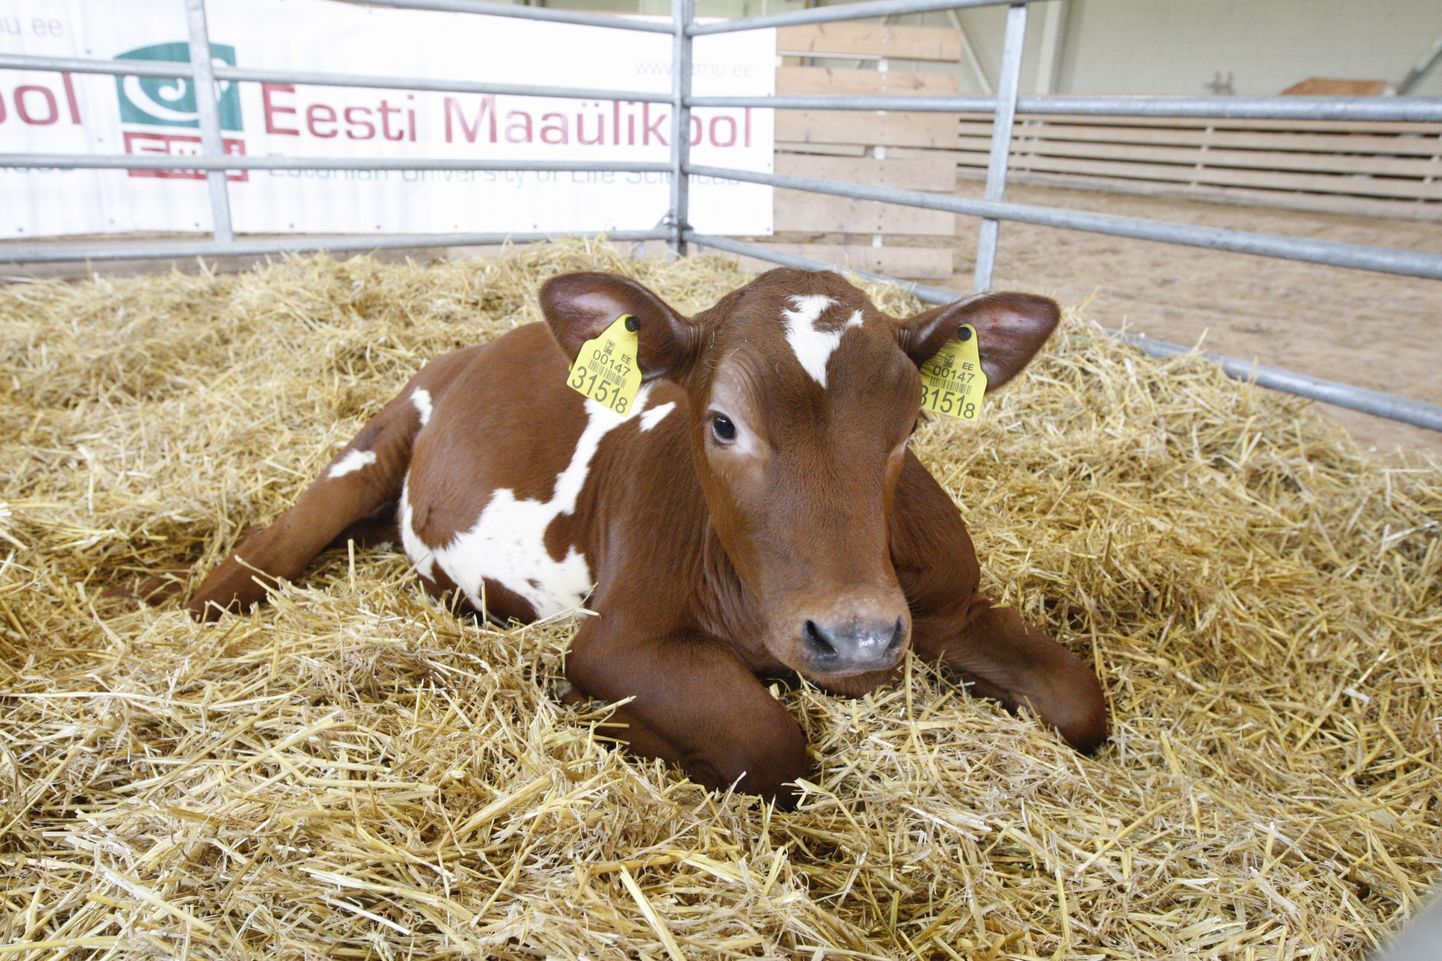 Eelmise aasta juuni lõpus EMÜs sündinud lehmvasika genoomis oli inimese kasvuhormooni geen ning kasvuhormooni lüpsva lehma piima oleks saanud kasutada erinevate haiguste ravimisel, paraku suri vasikas oktoobri alguses.